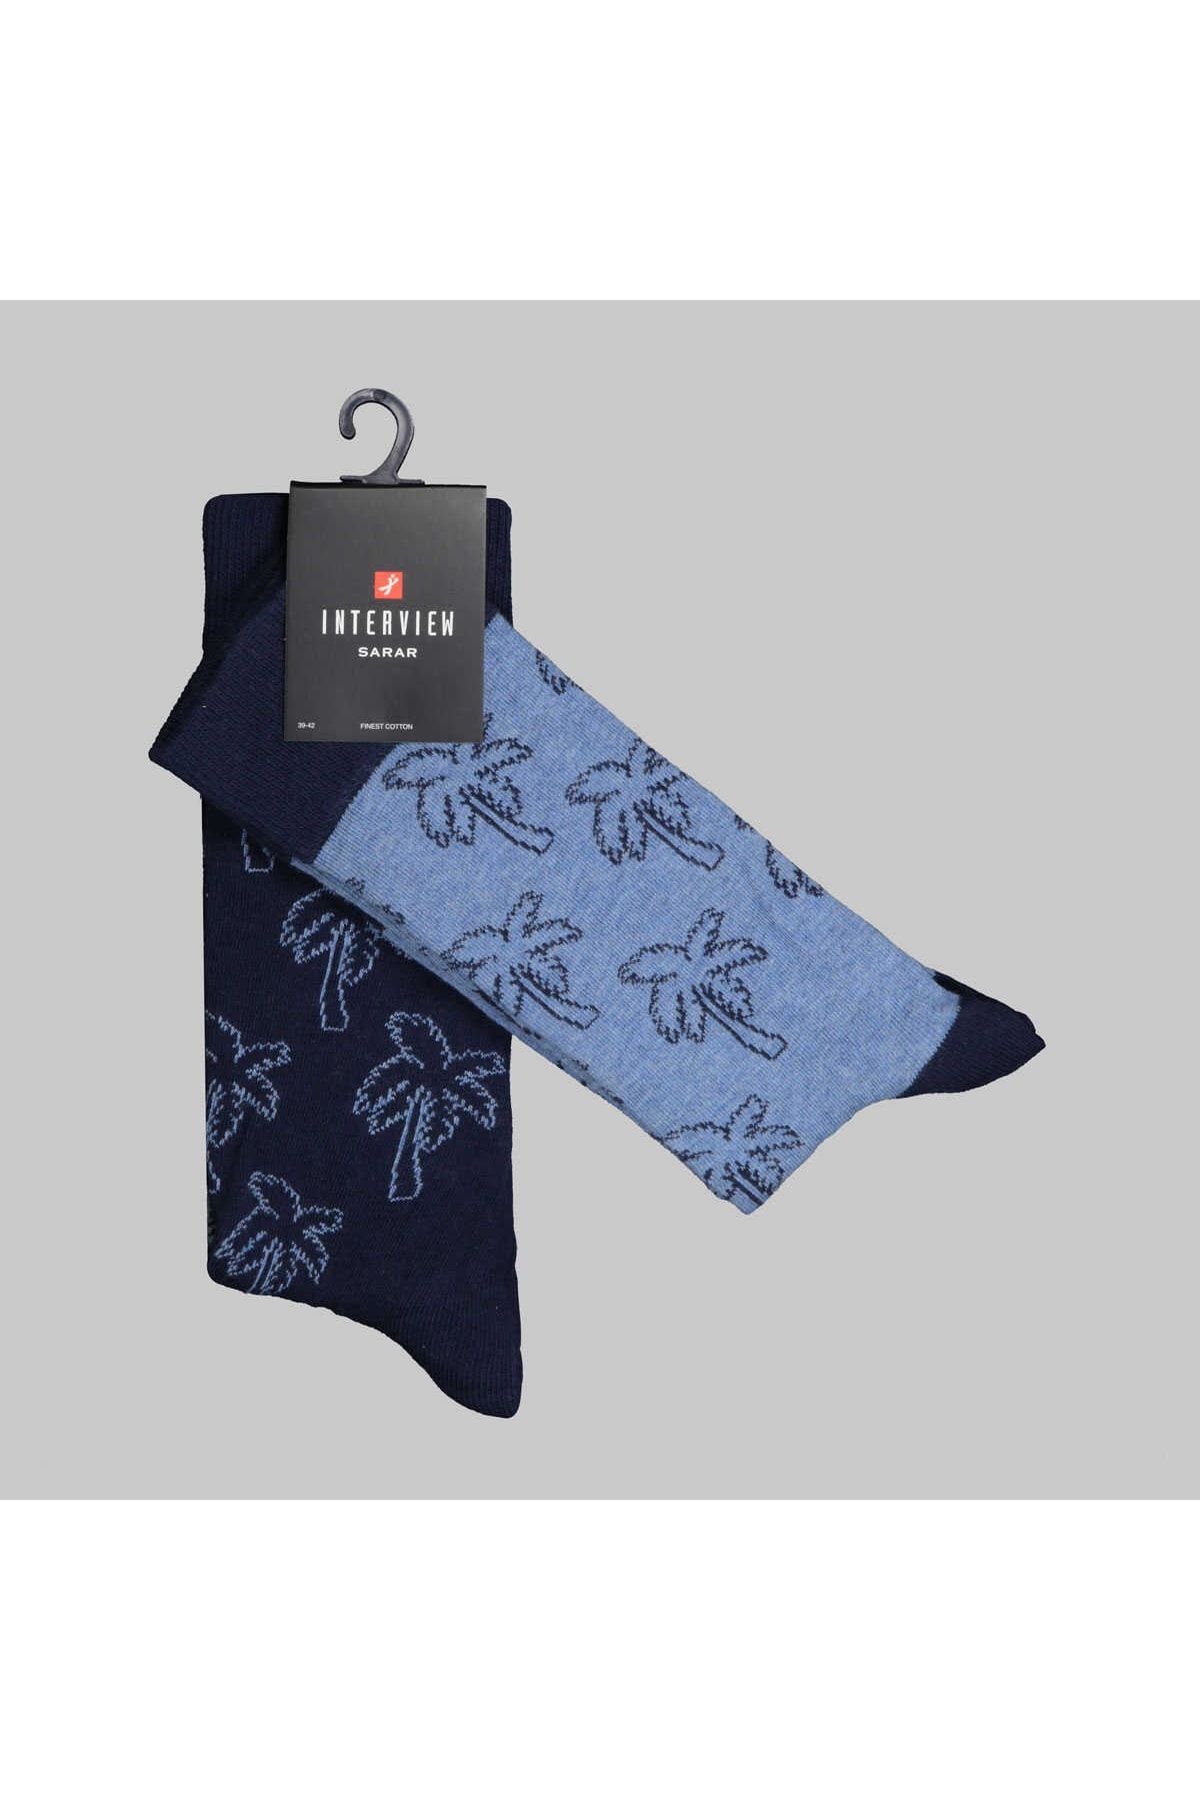 Sarar Palmiye Desen Lacivert Mavi 2'li Çorap